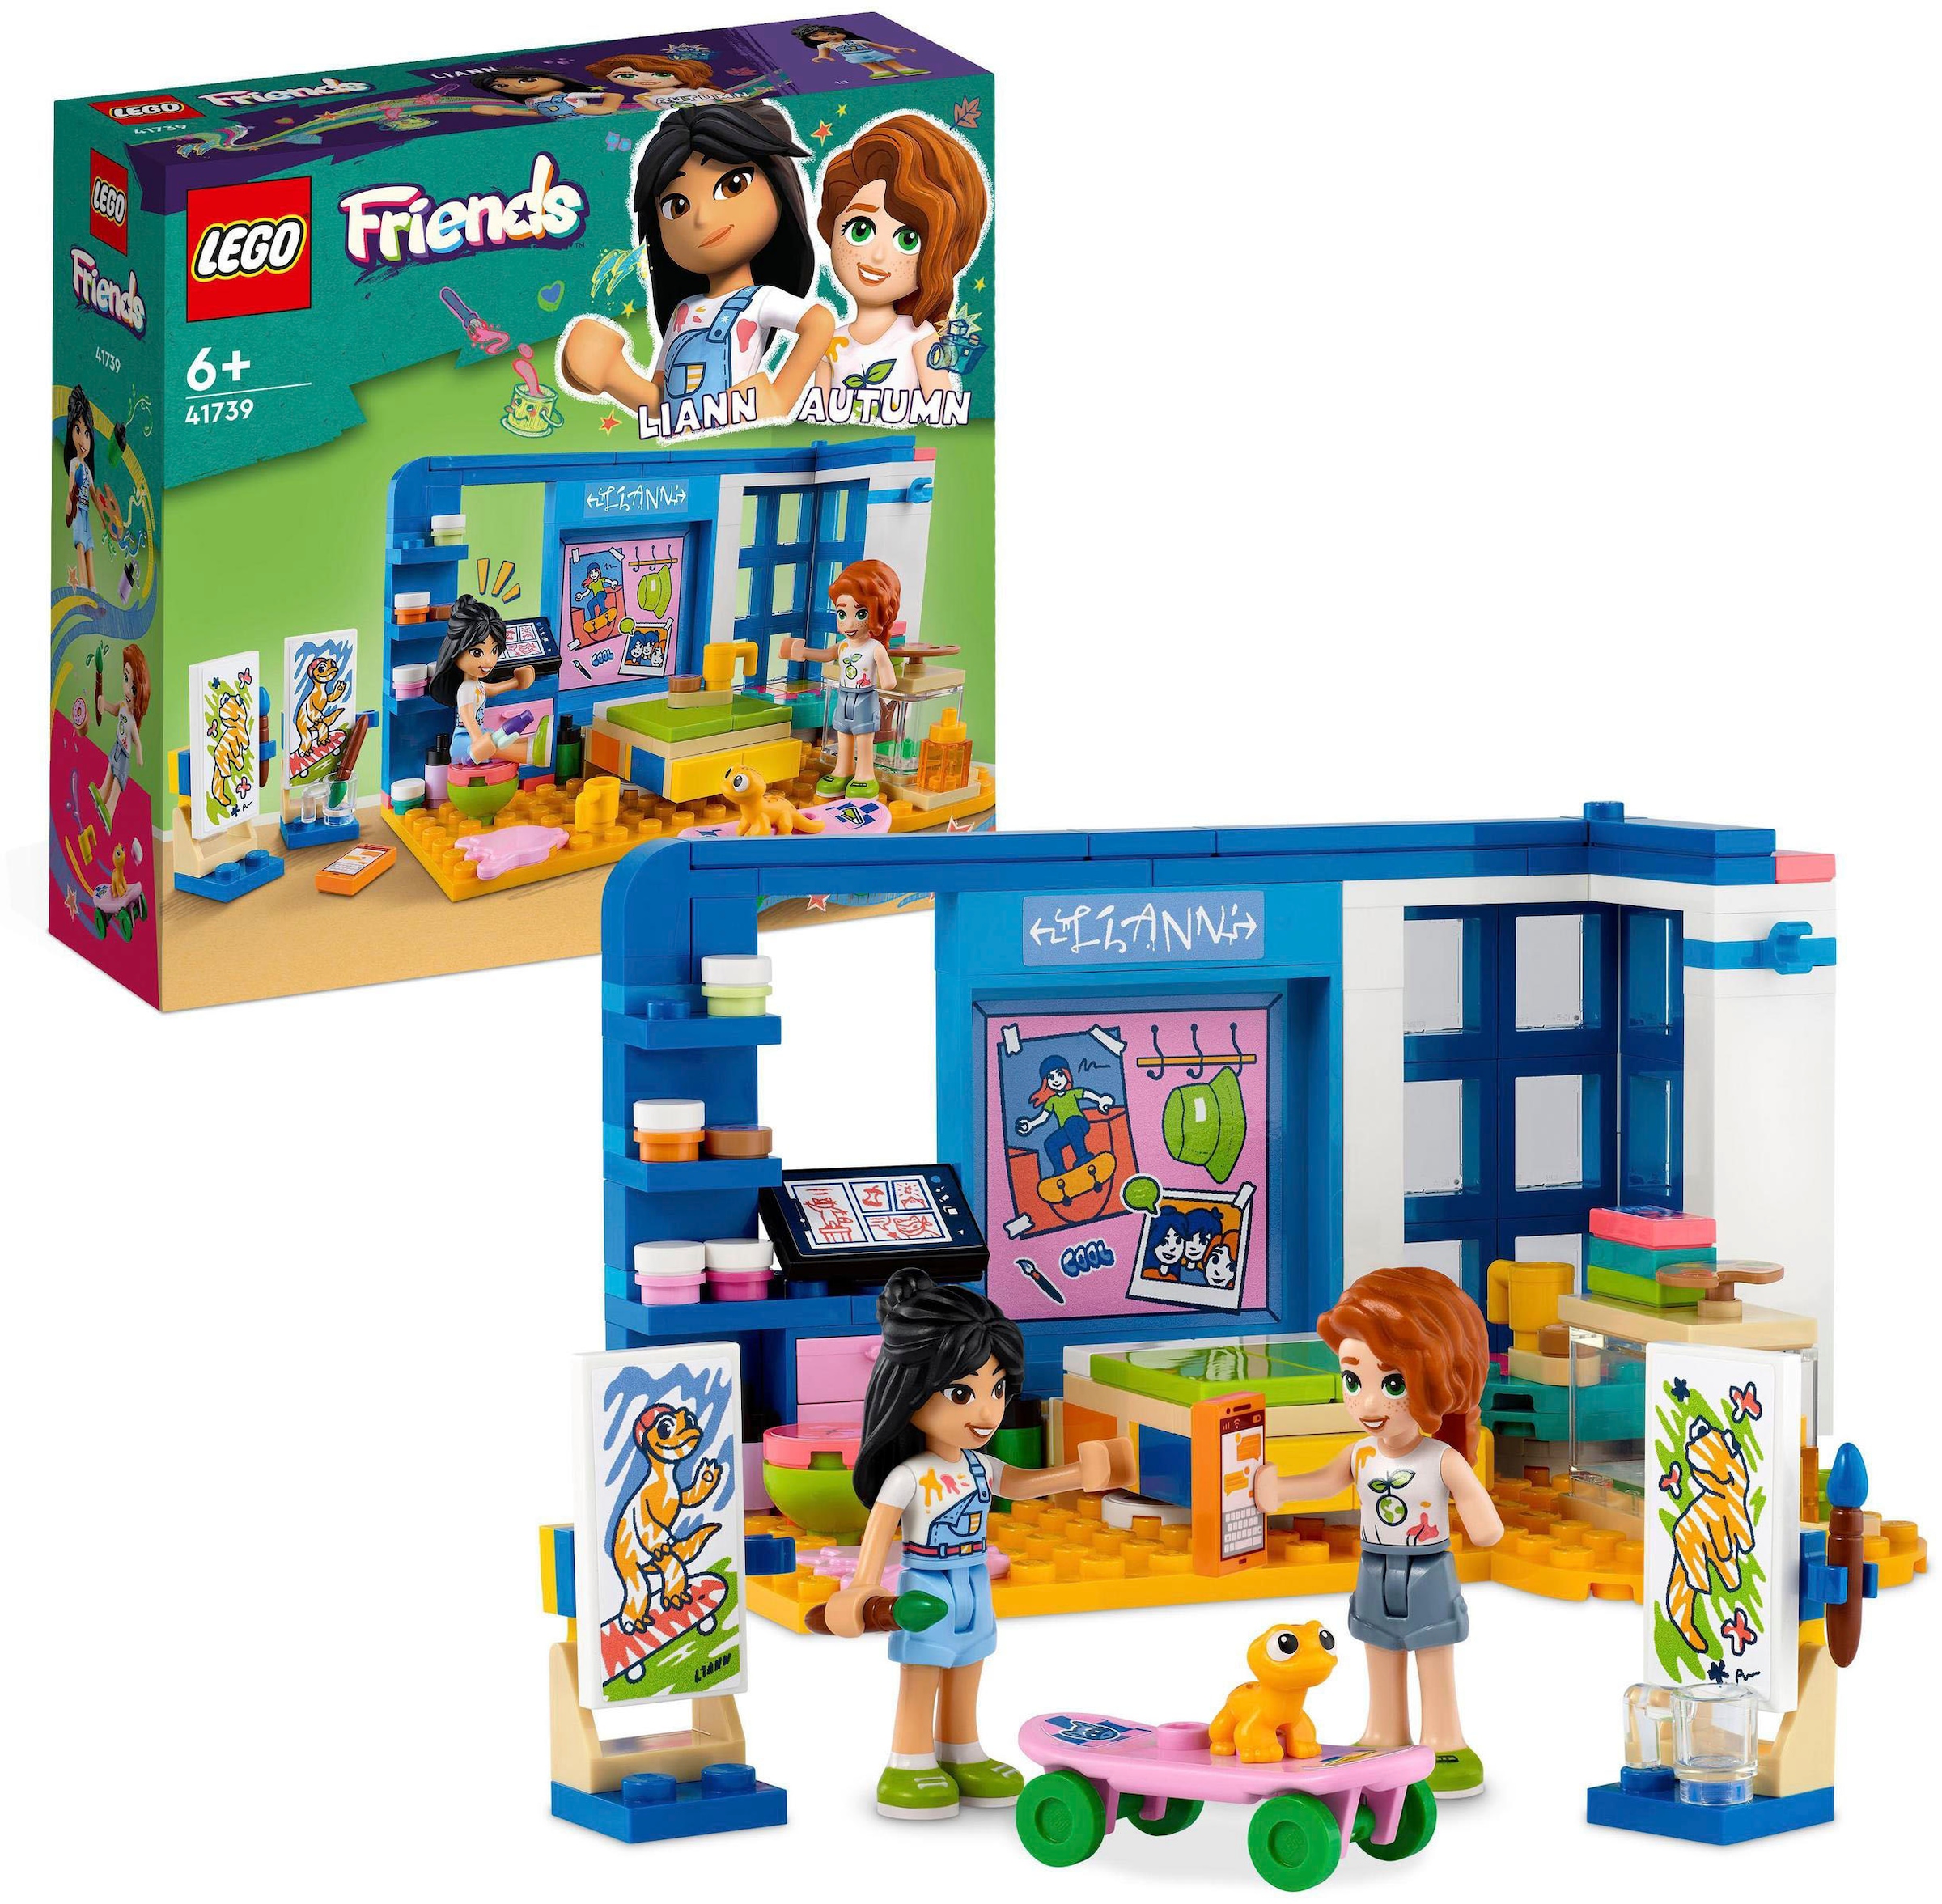 Konstruktionsspielsteine »Lianns Zimmer (41739), LEGO® Friends«, (204 St.), Made in...